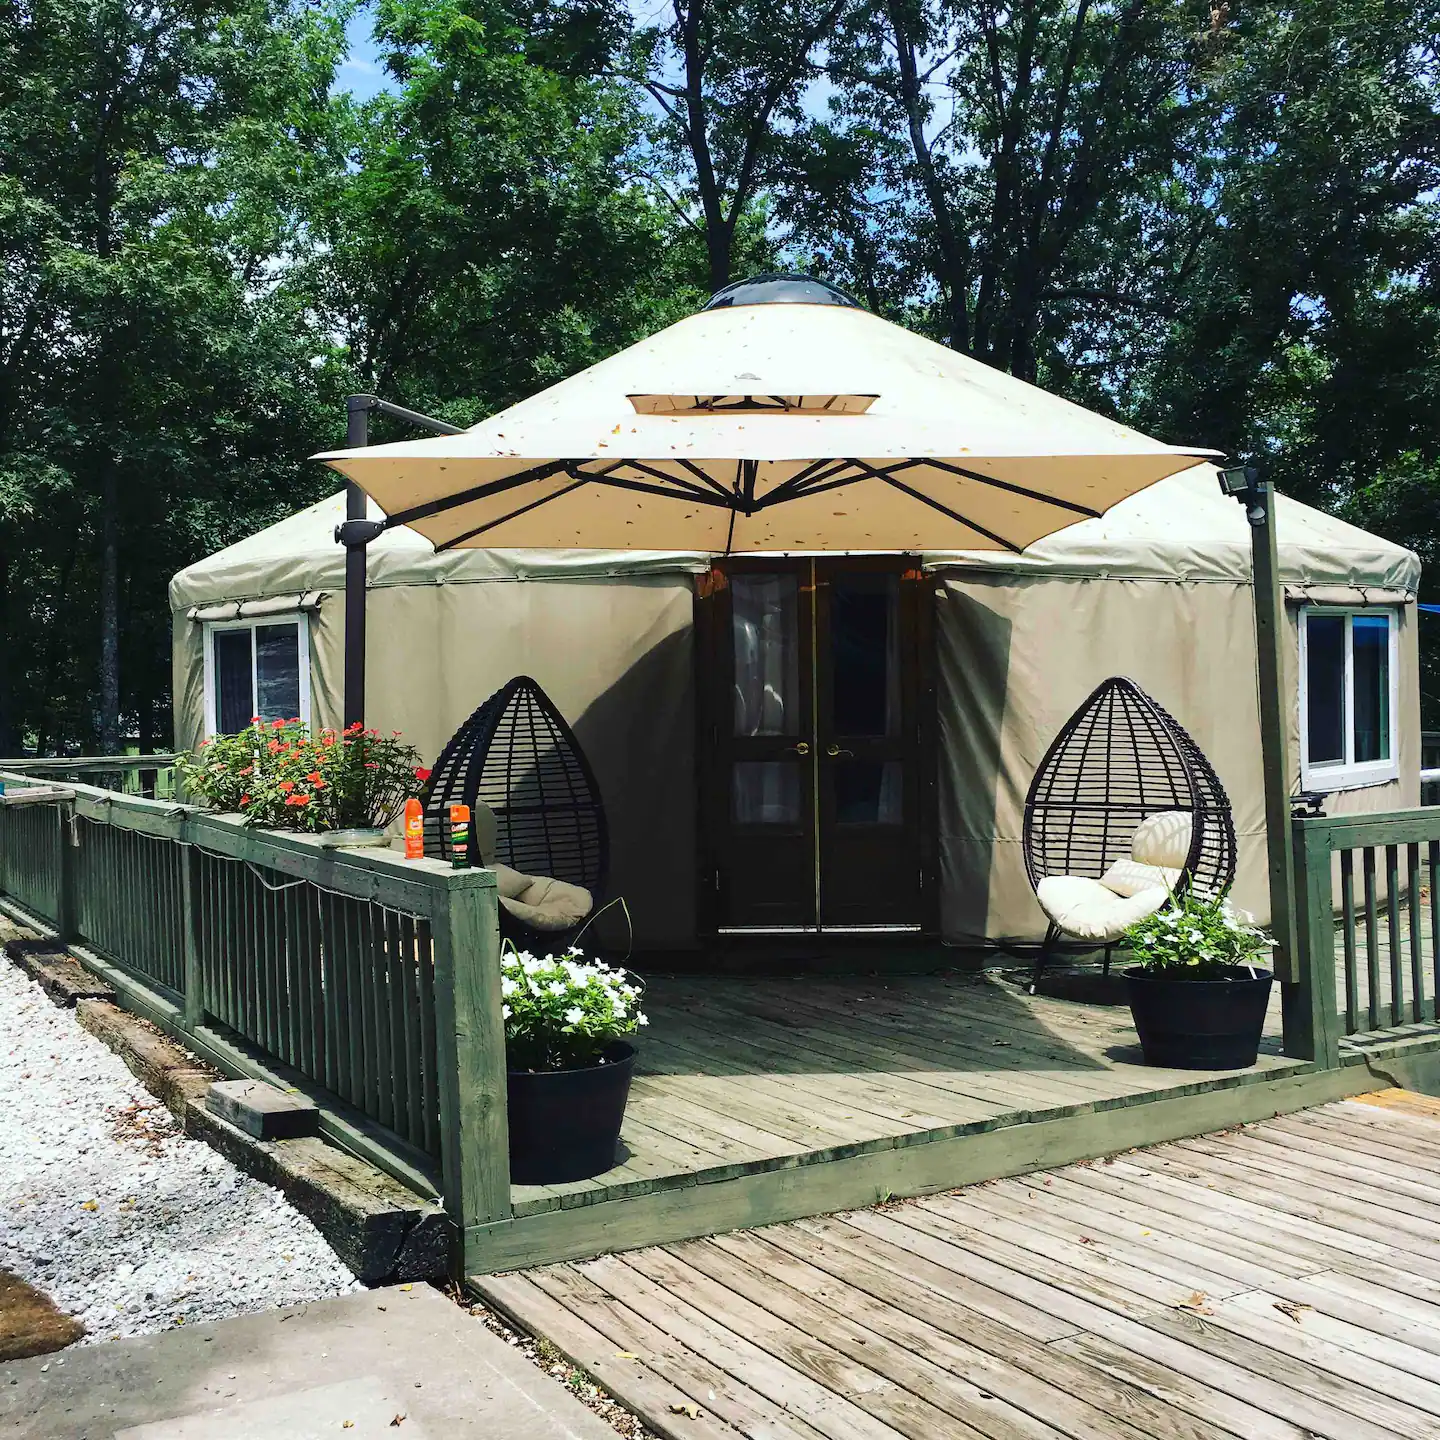 The Yurt Retreat in Northwest Arkansas